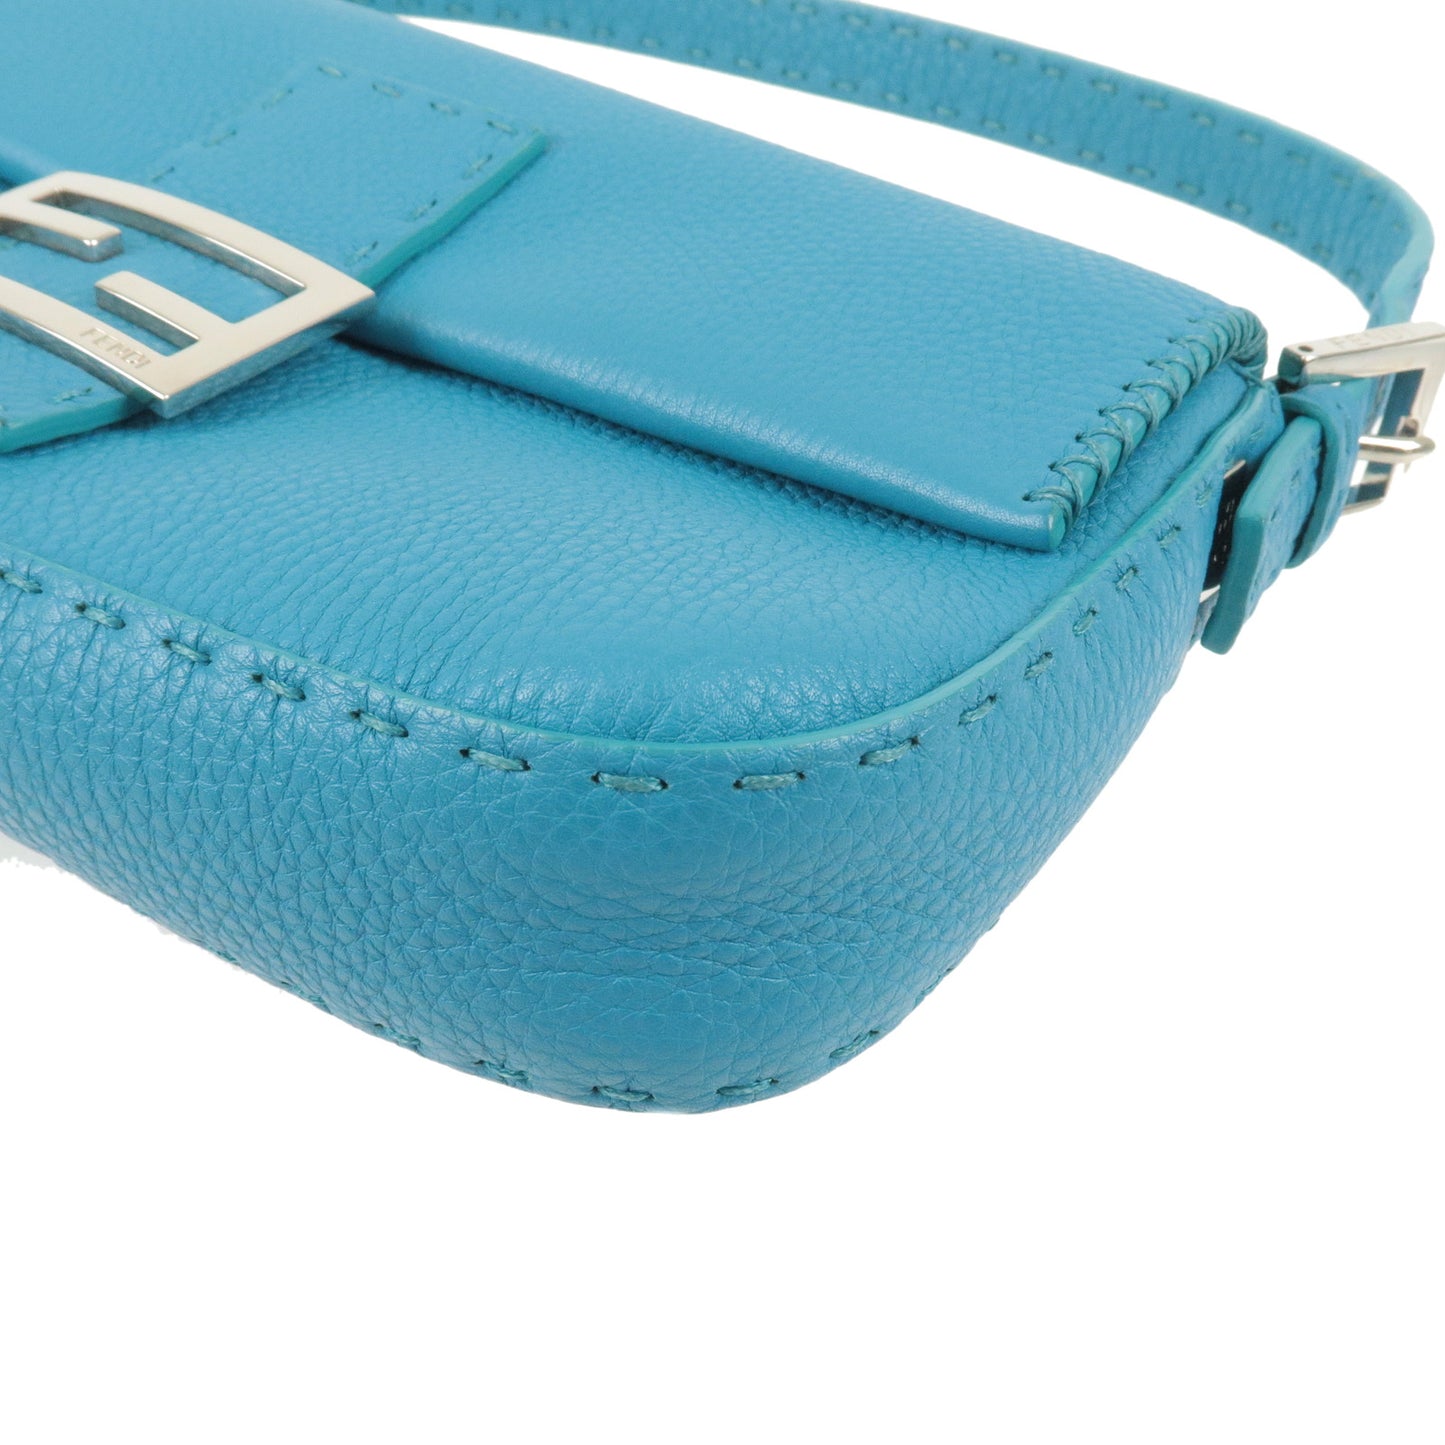 FENDI Selleria Mamma Baguette Leather Shoulder Bag Blue 8BR600